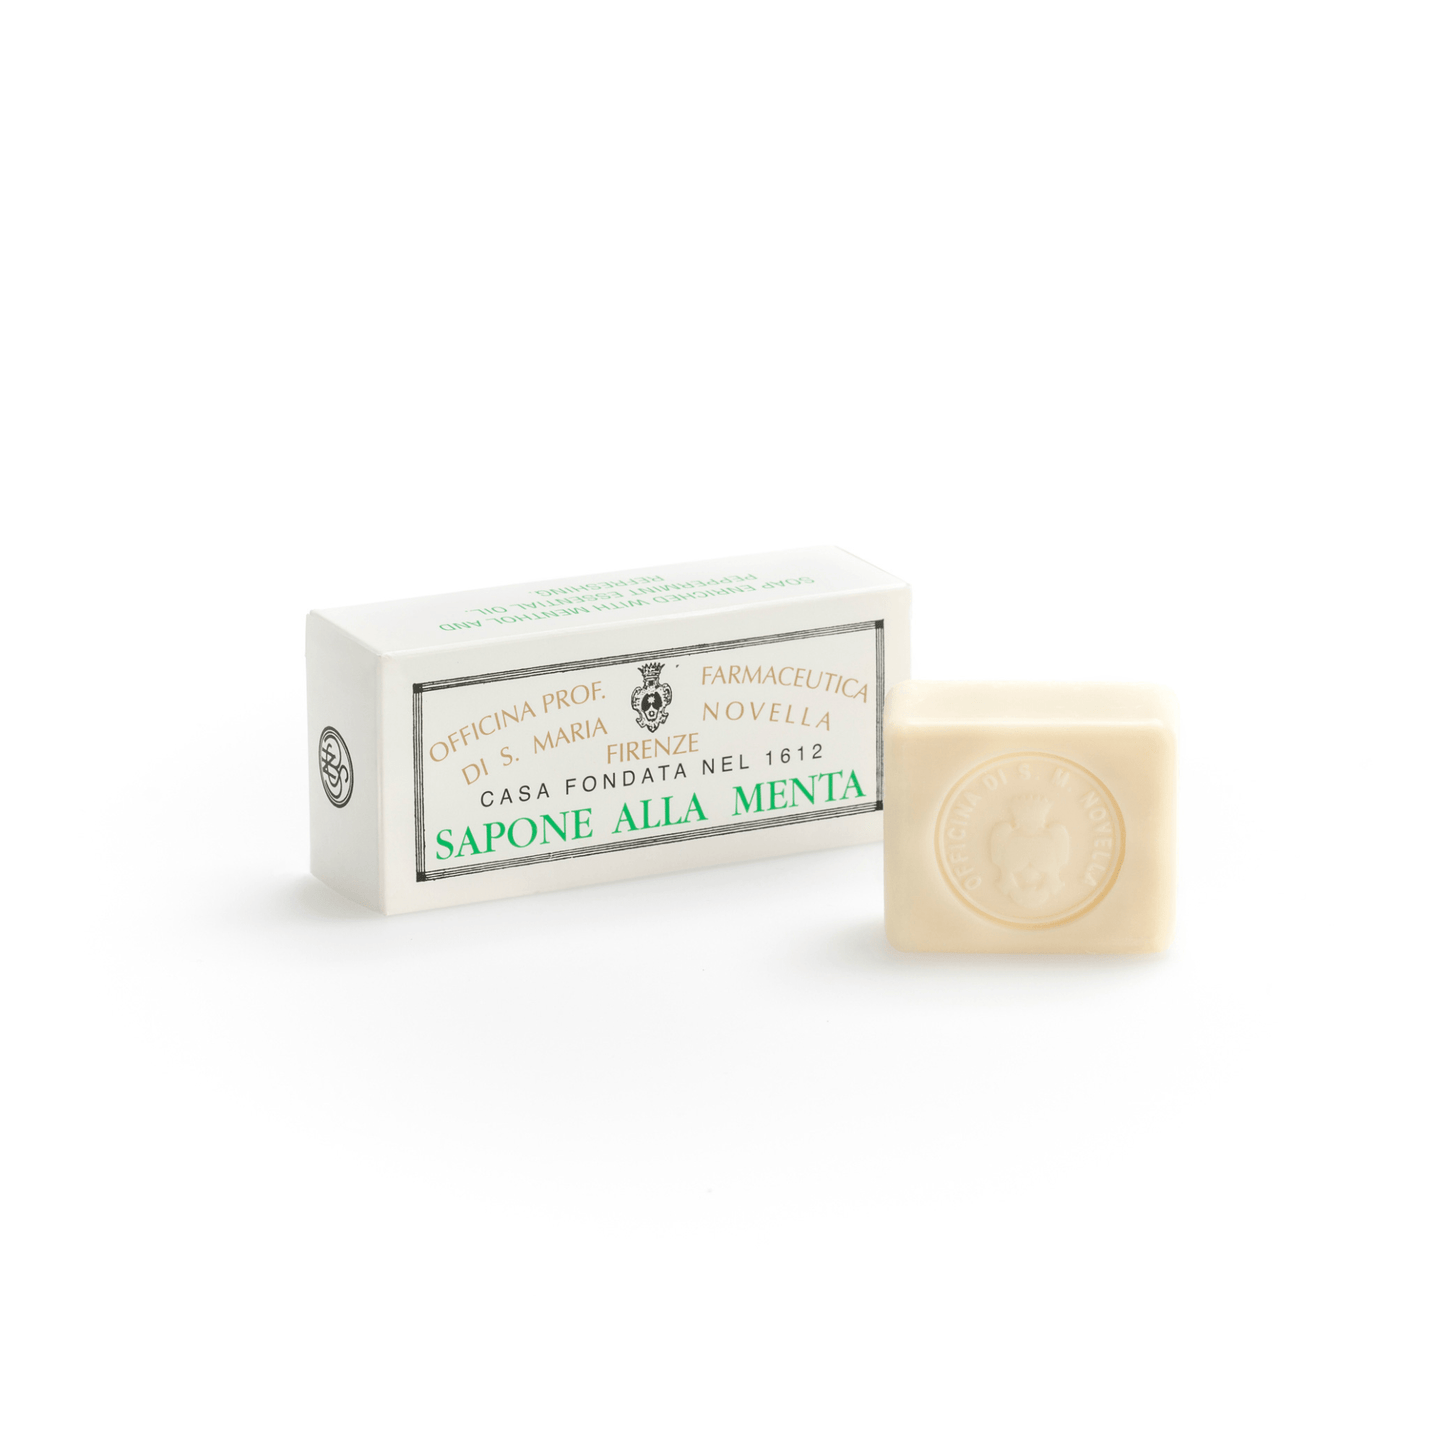 Primary Image of Mint Soap (Sapone alla Menta) Box of 2